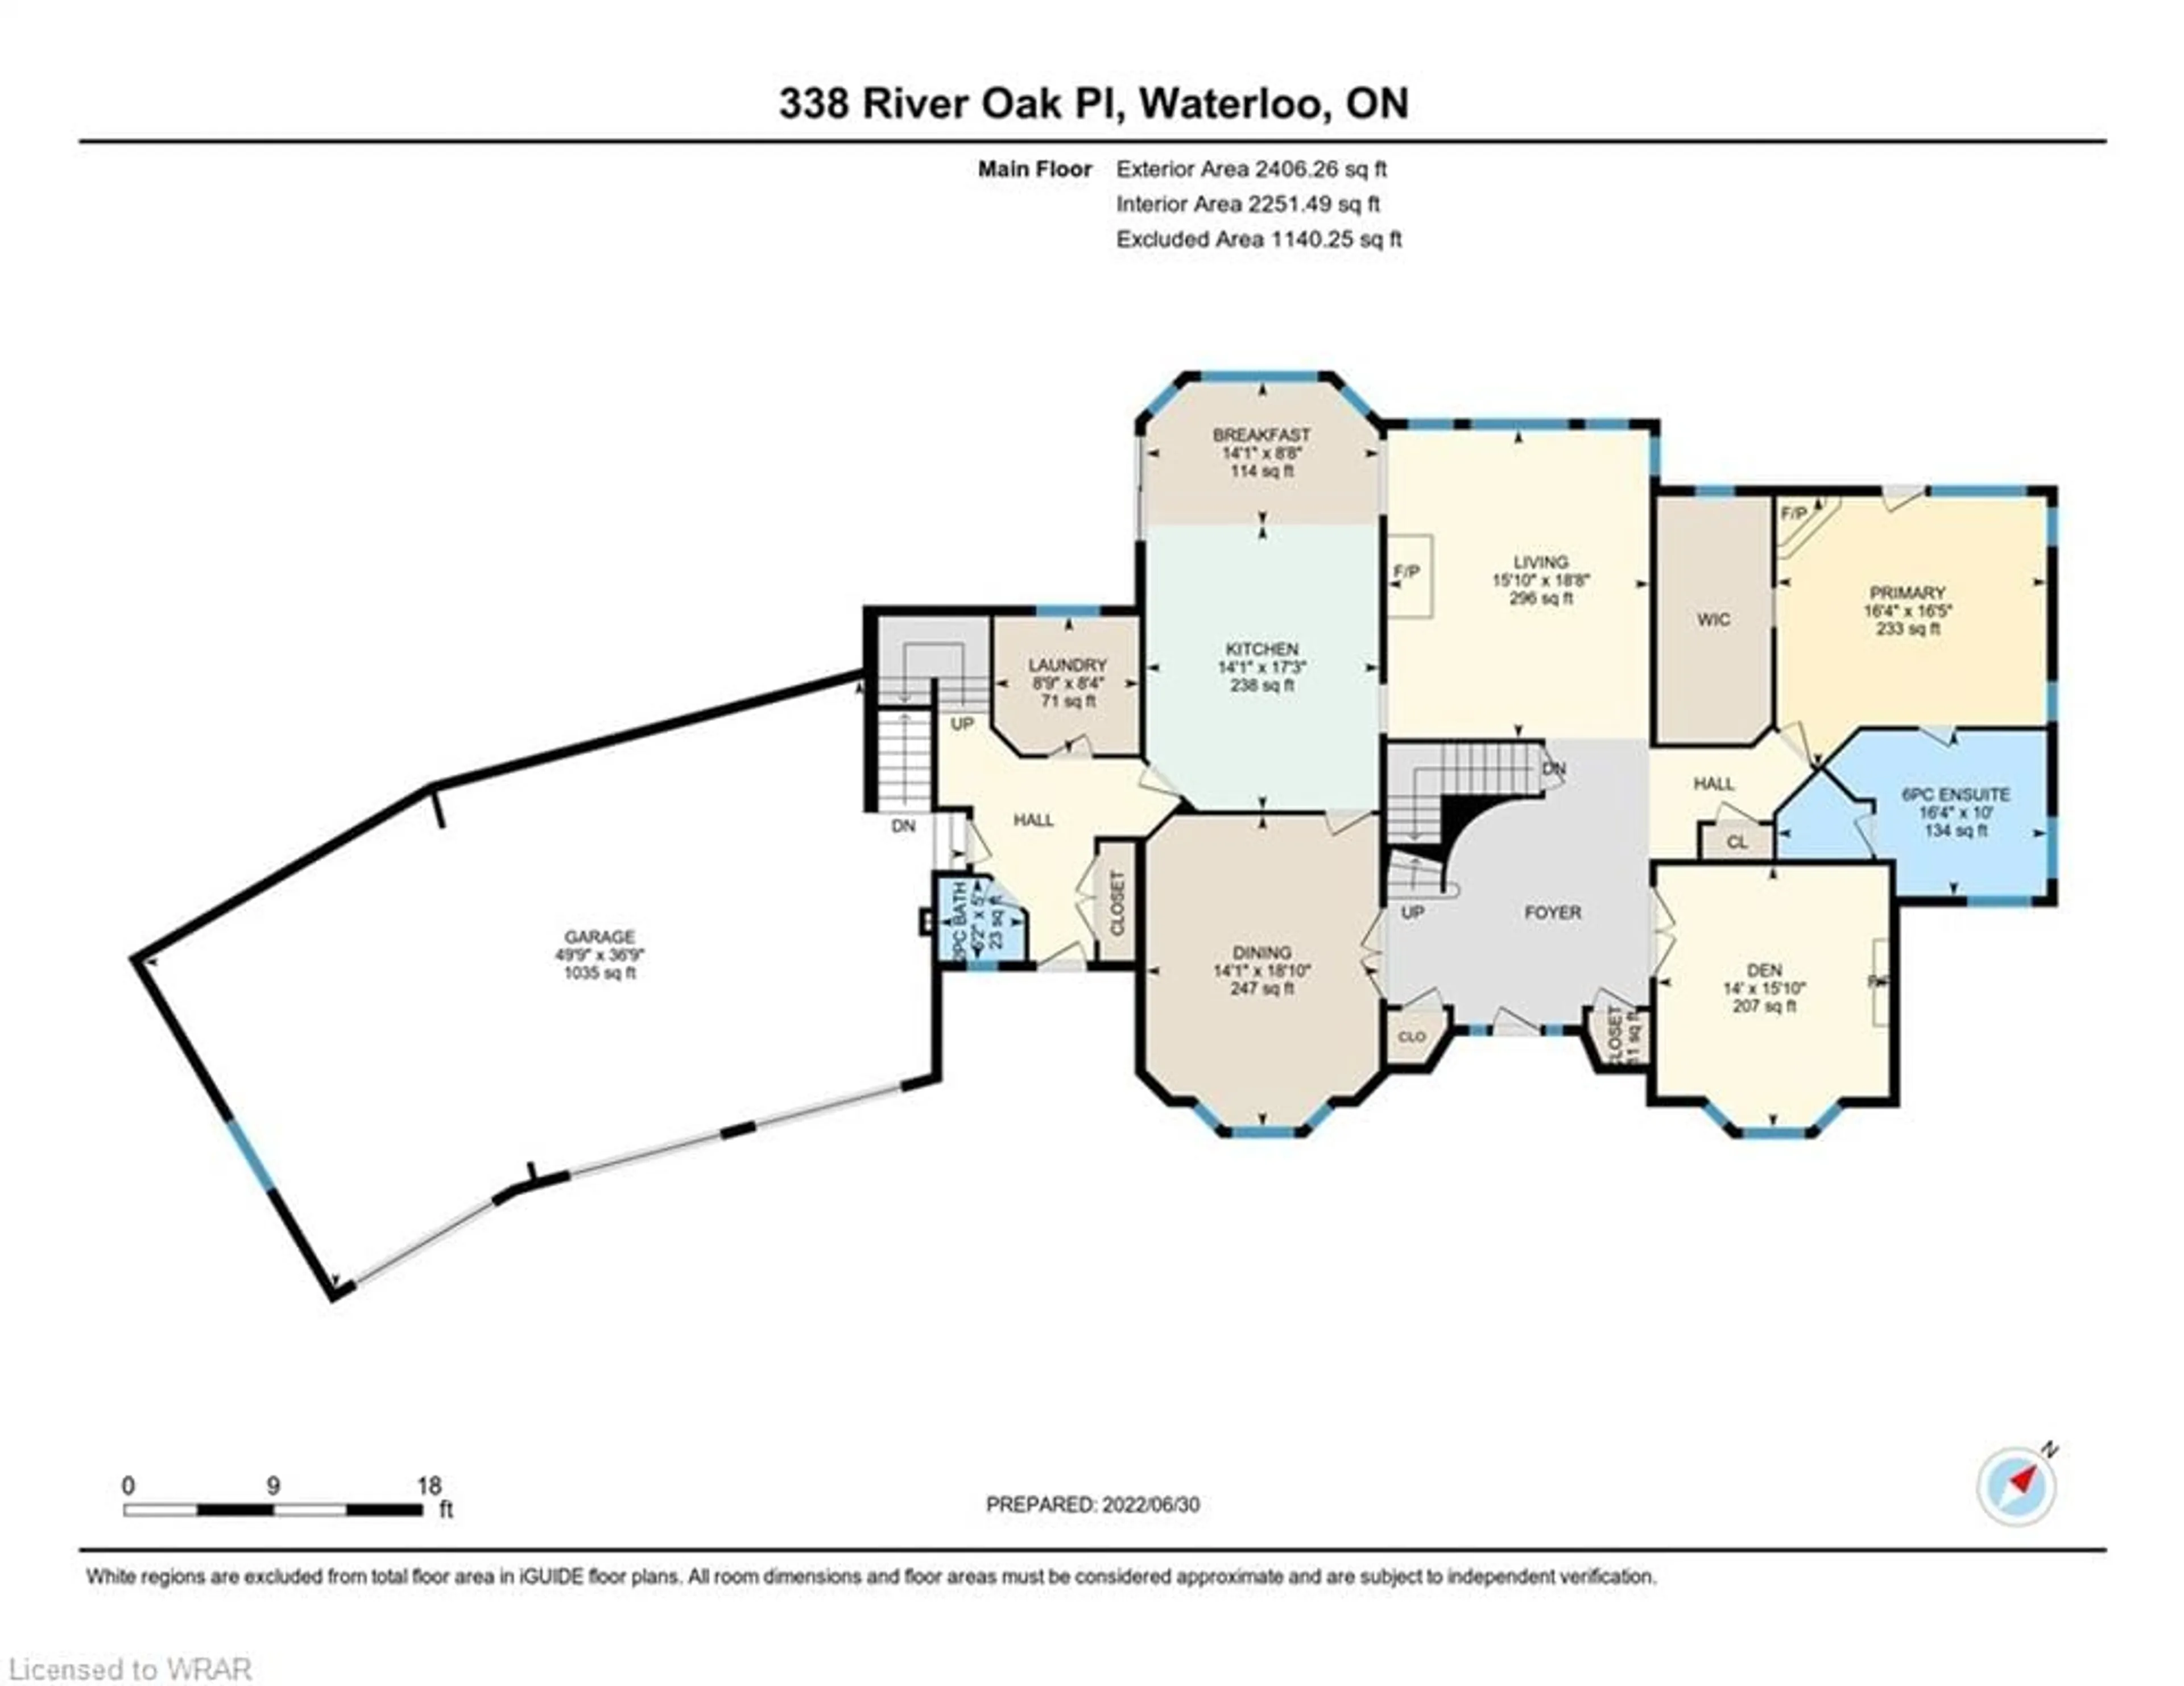 Floor plan for 338 River Oak Pl, Waterloo Ontario N2K 3N8